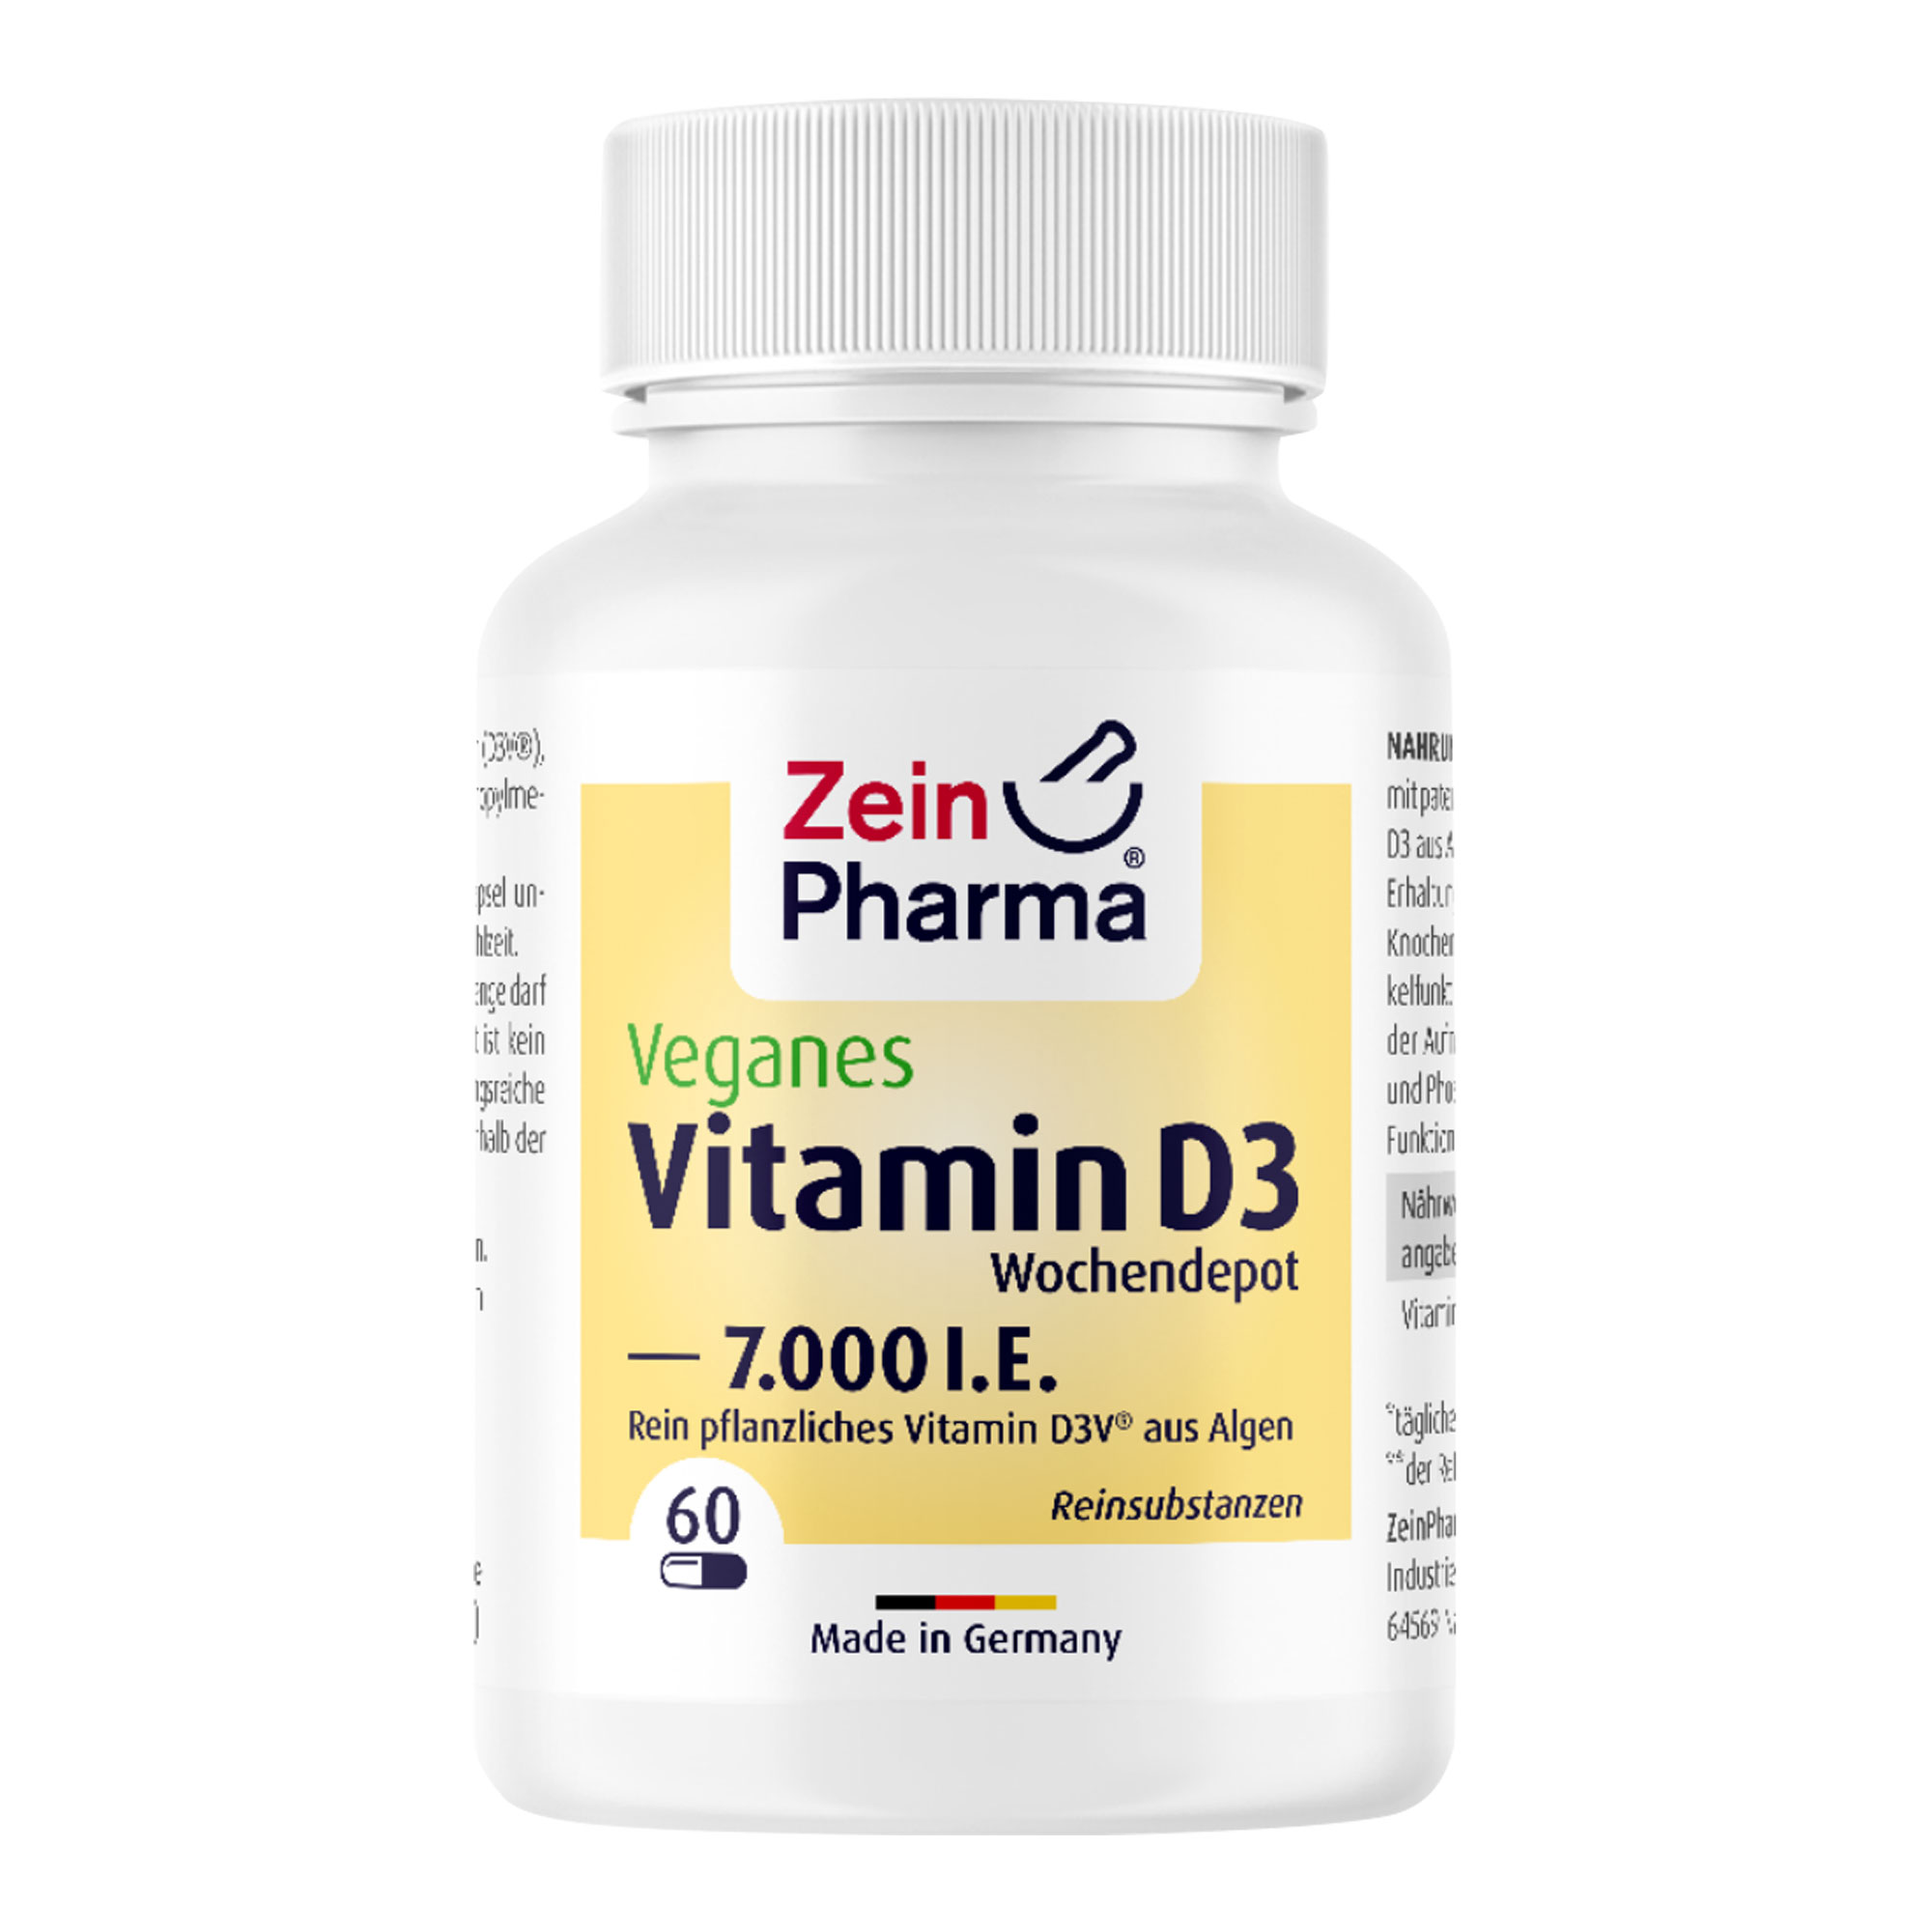 Nahrungsergänzungsmittel mit patentiertem rein pflanzlichem Vitamin D3 aus Algen.